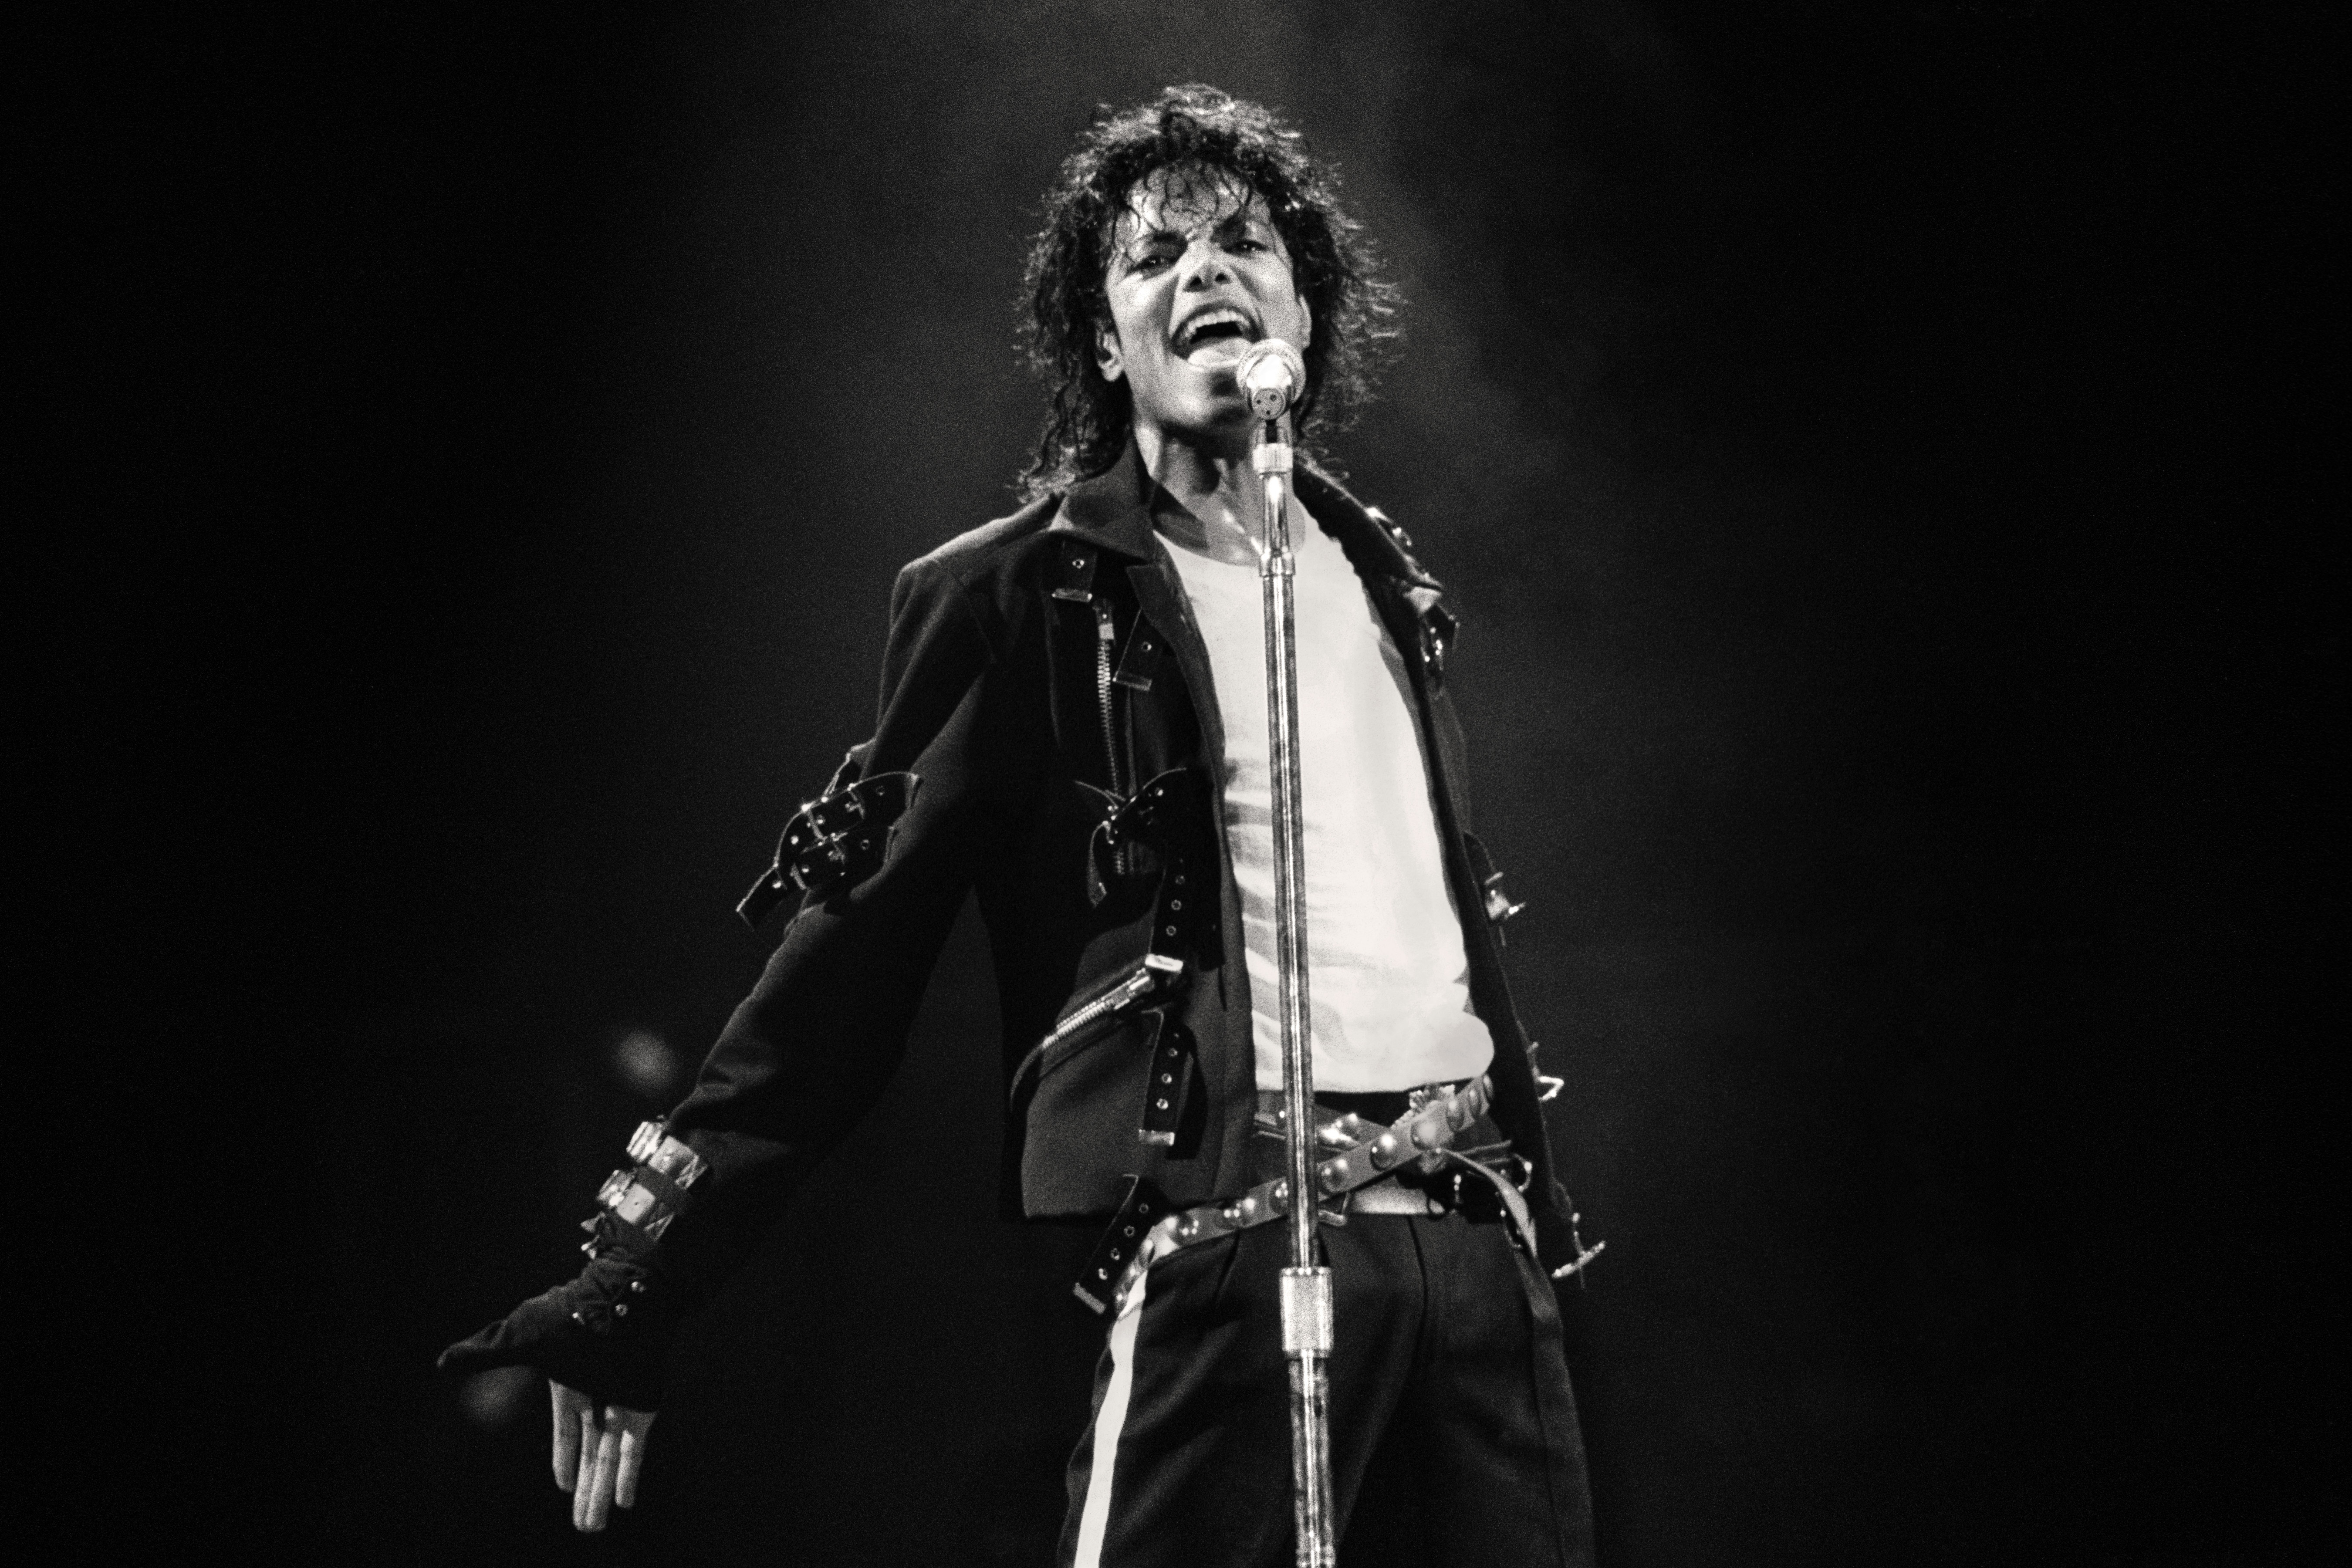 "No sabía del lado oscuro de Michael Jackson", Paul McCartney habla sobre 'Leaving Neverland'